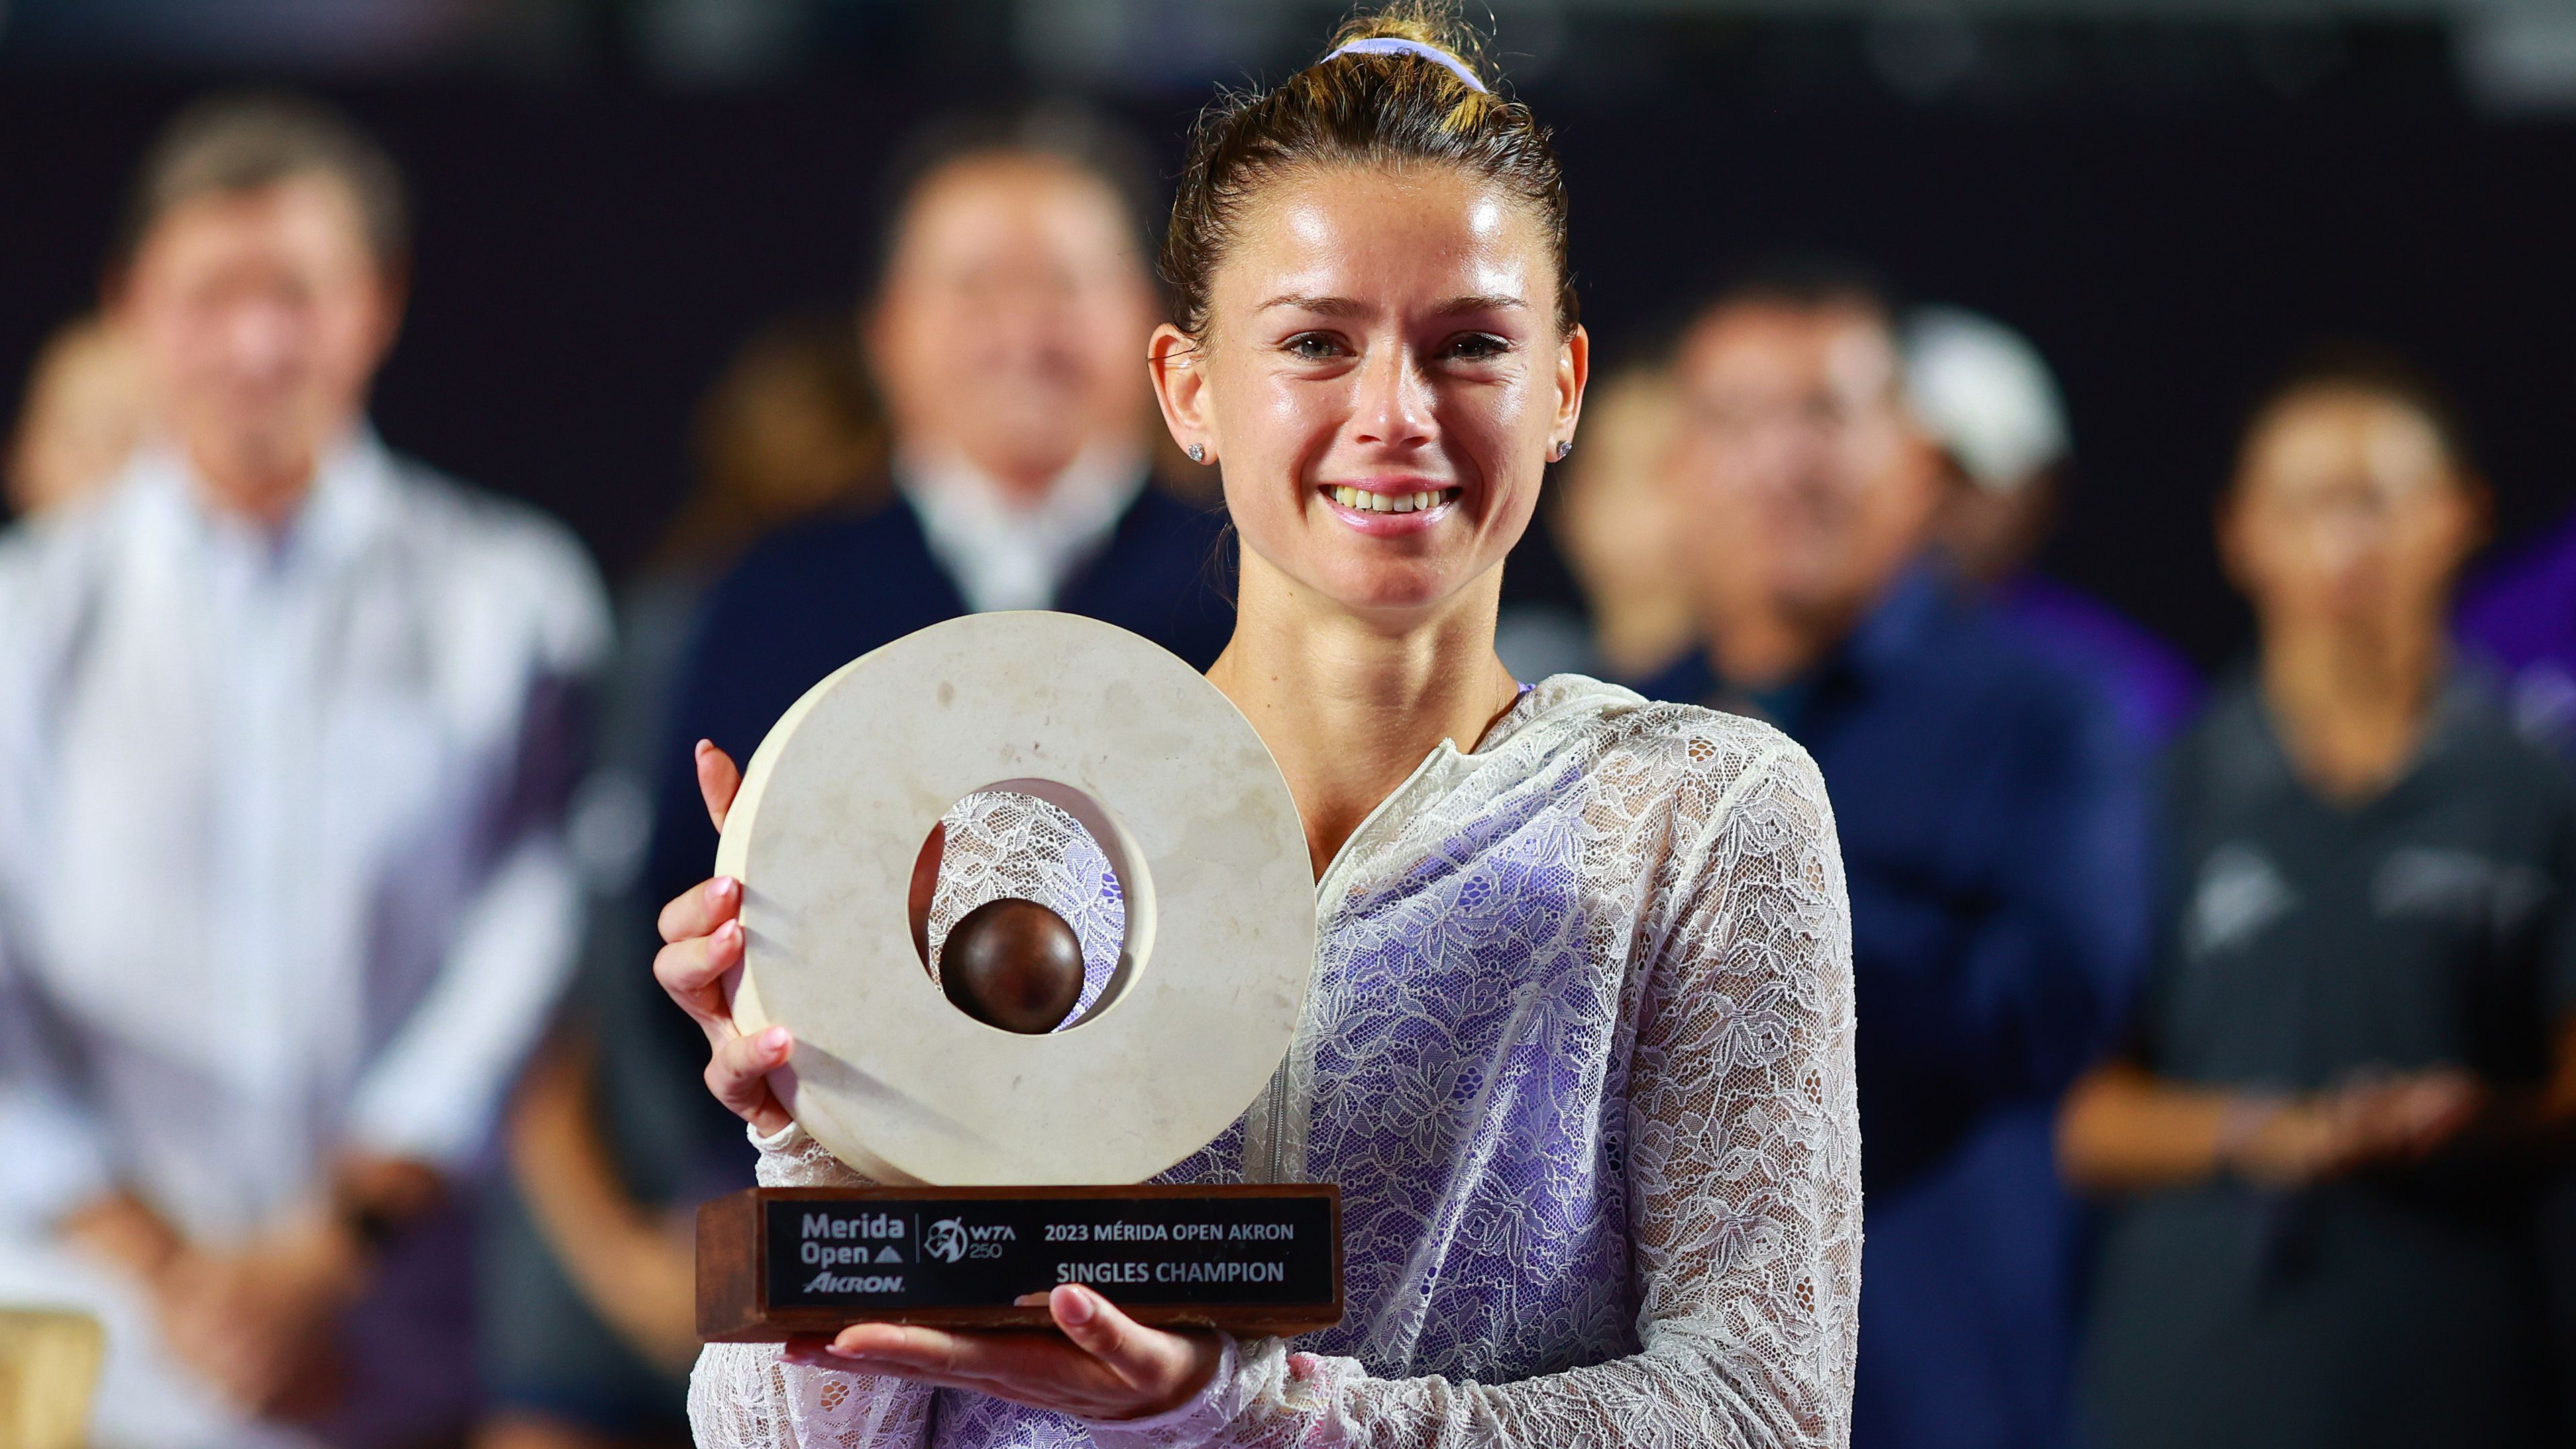 Giorgi a negyedik trófeáját nyerte a méridai tenisztornán